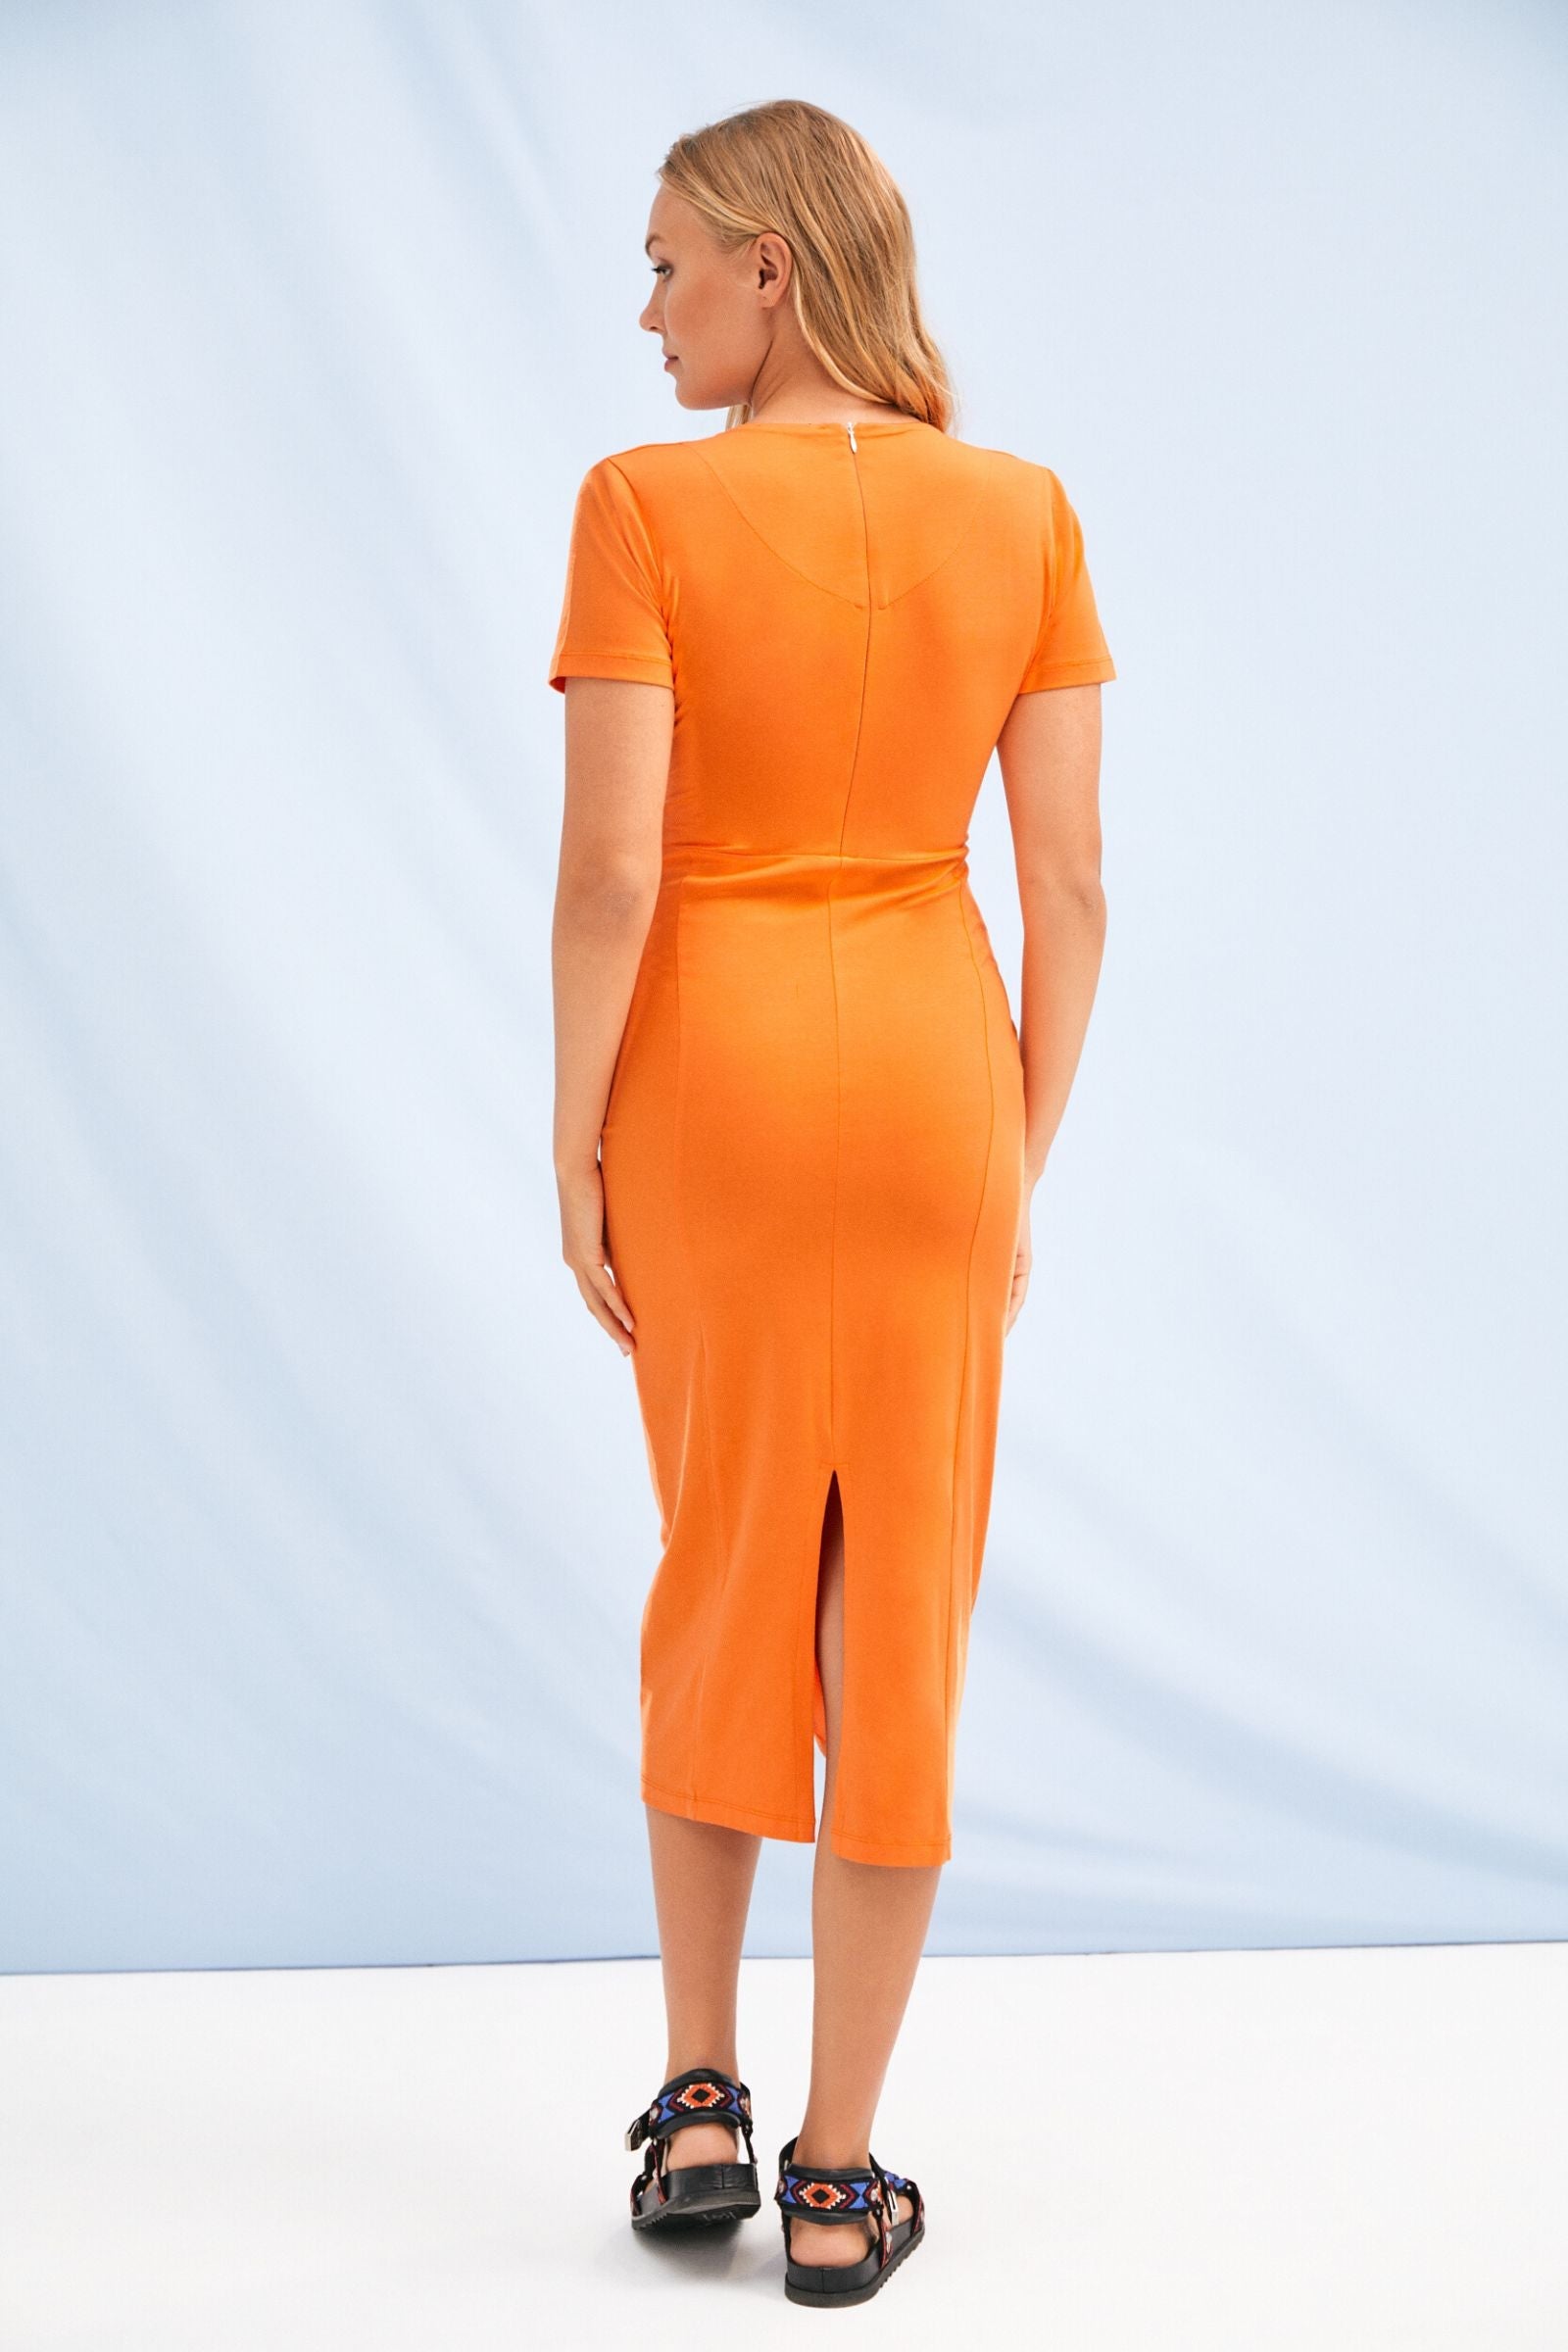 Vestido naranja cruzado en el pecho largo Lolitas&L - lolitasyl.com